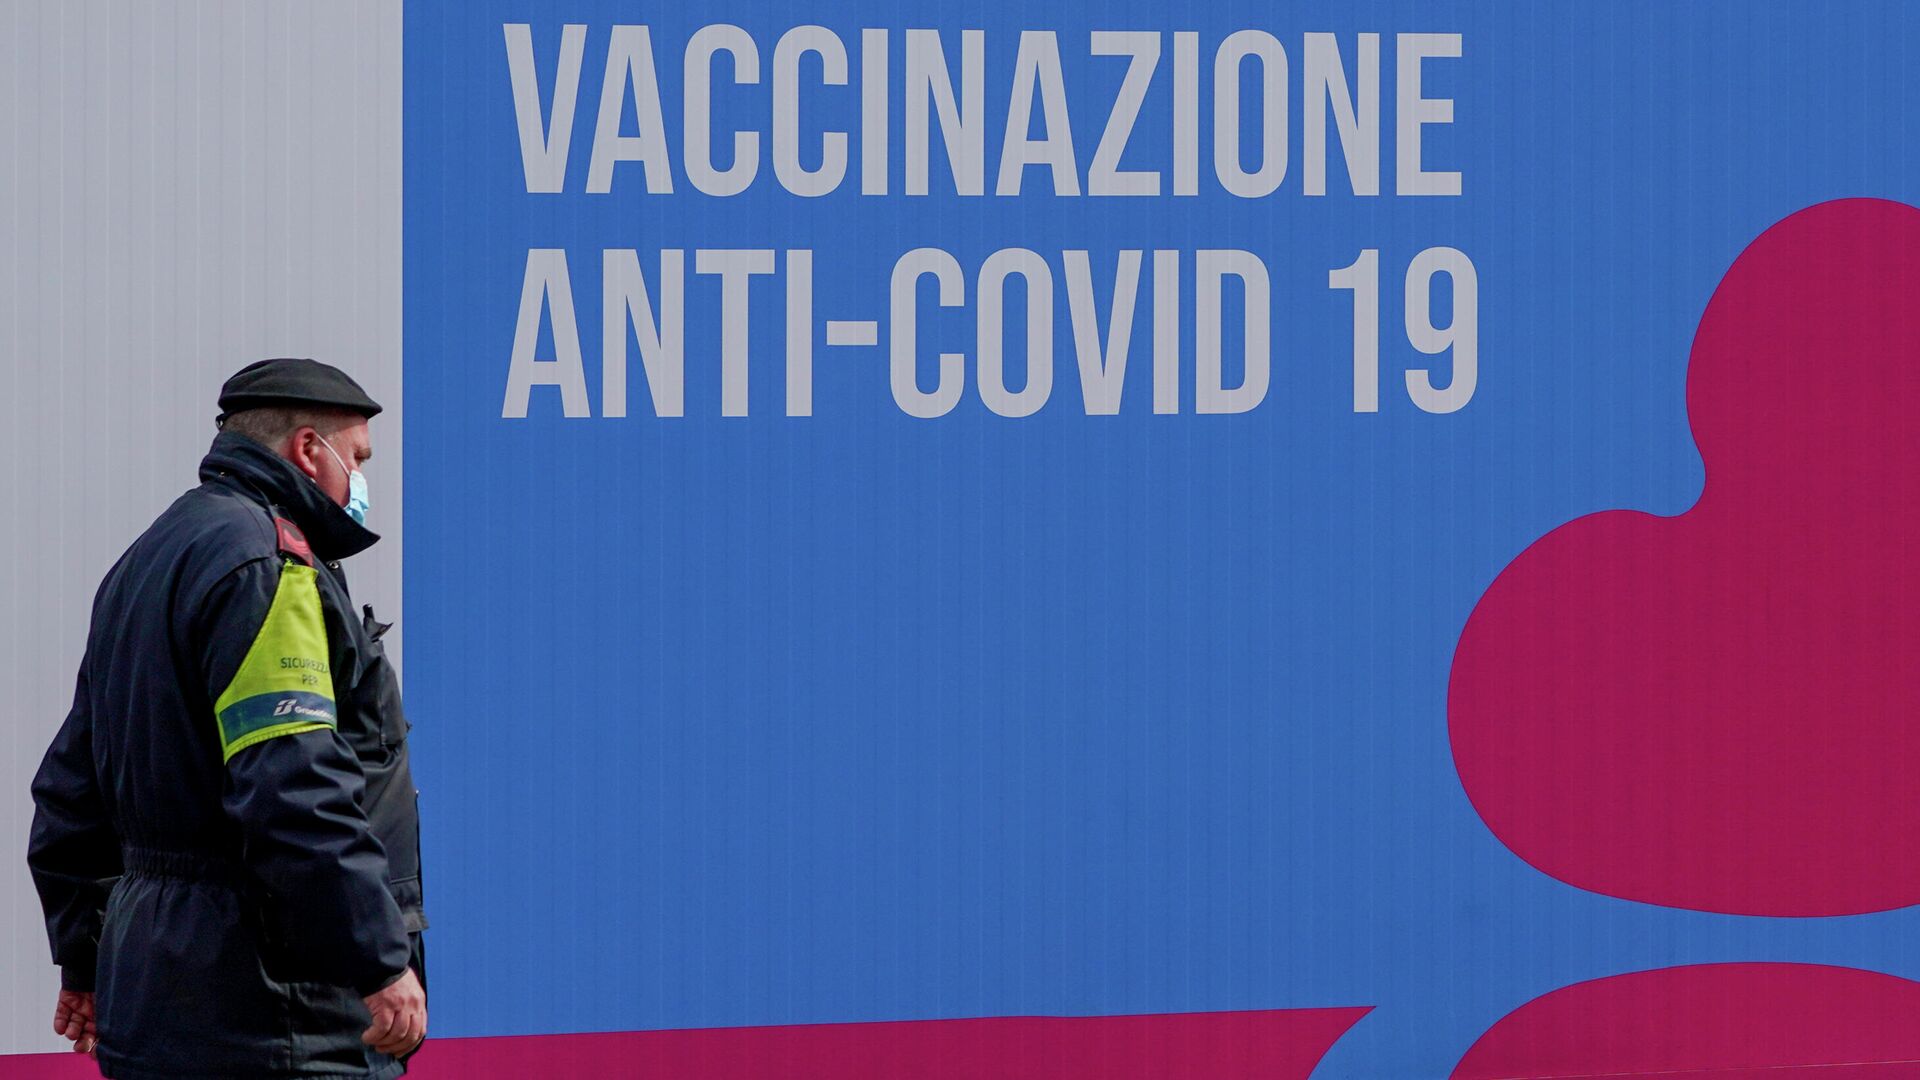 Закрытый центр вакцинации от коронавируса в Риме - РИА Новости, 1920, 27.09.2021